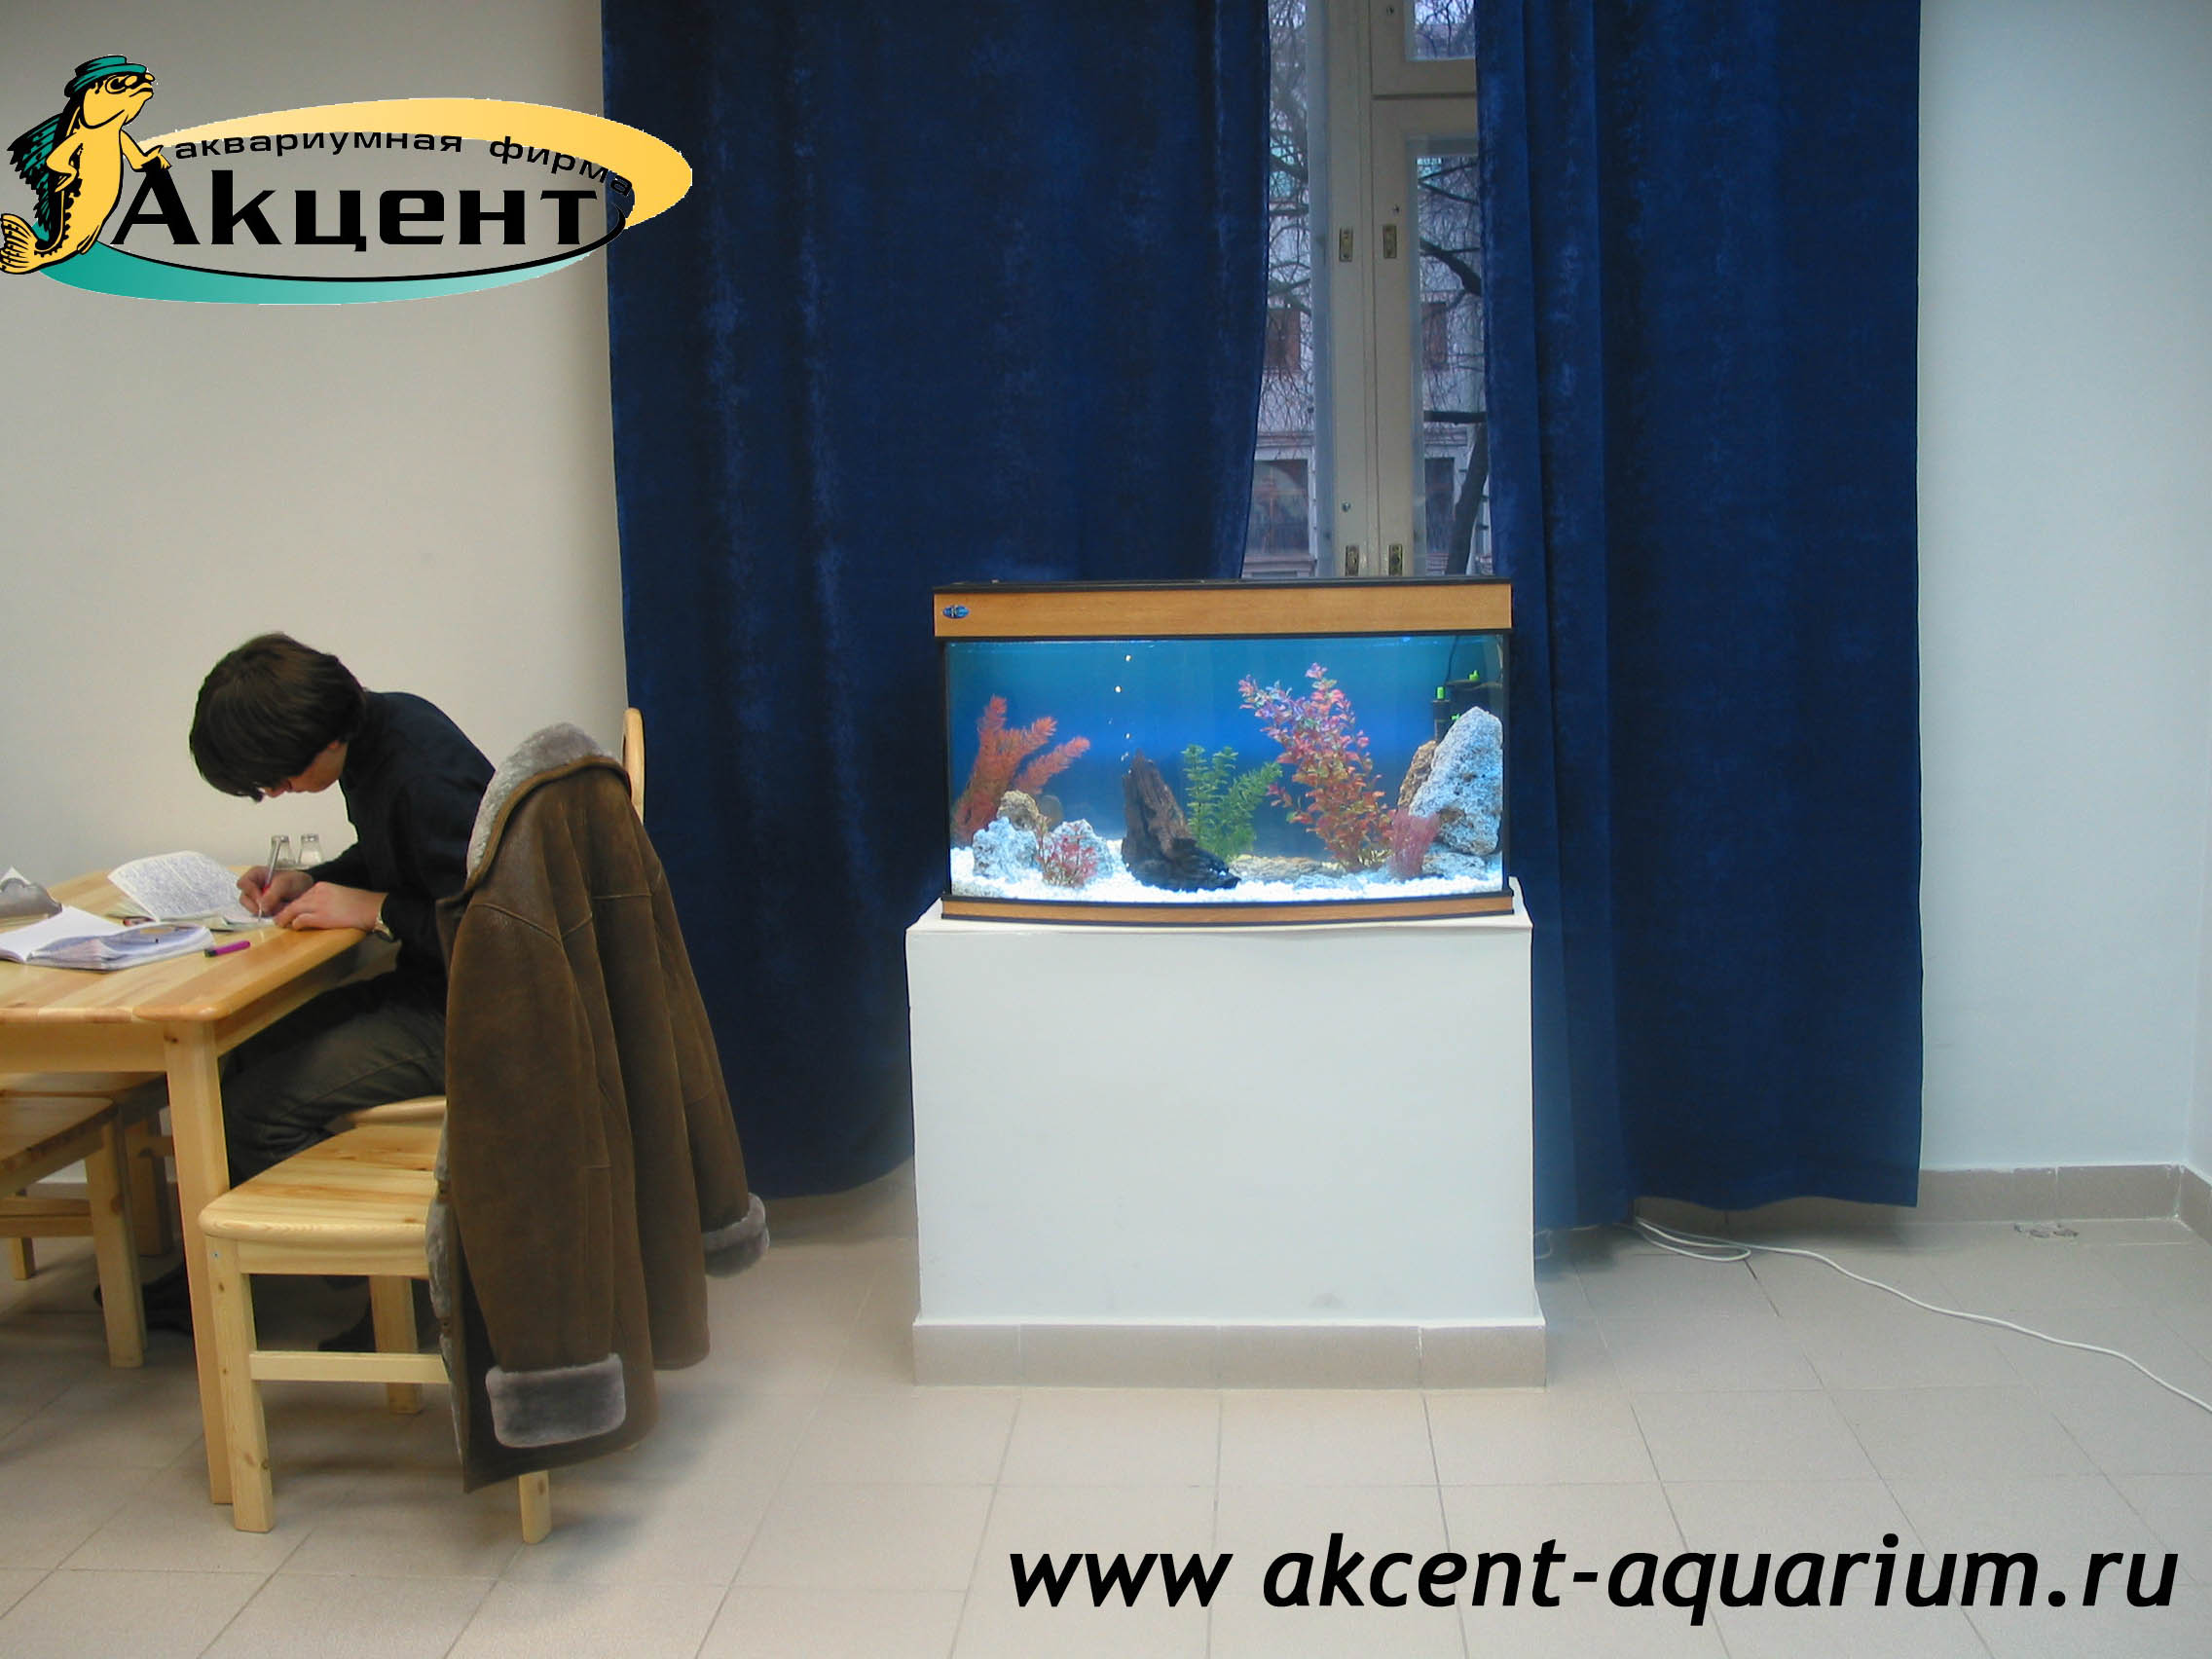 Акцент-аквариум, аквариум 160 литров, с гнутым передним стеклом